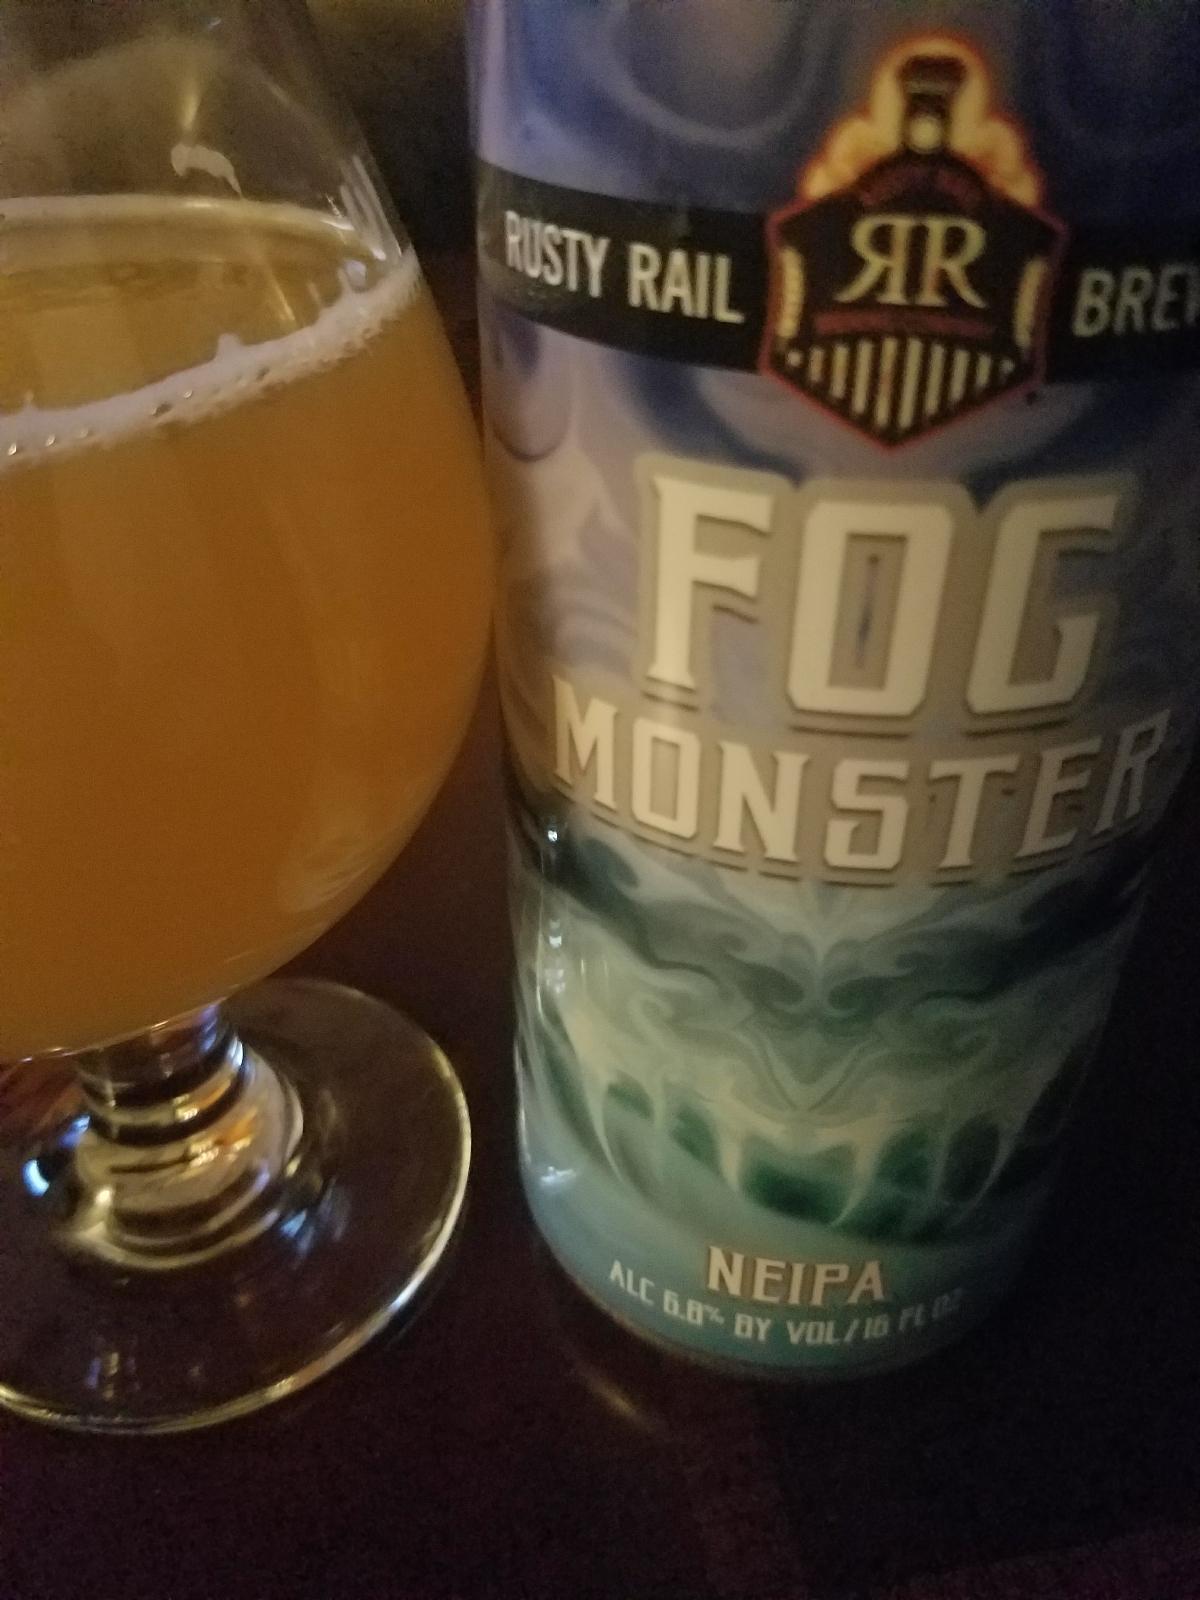 Fog Monster